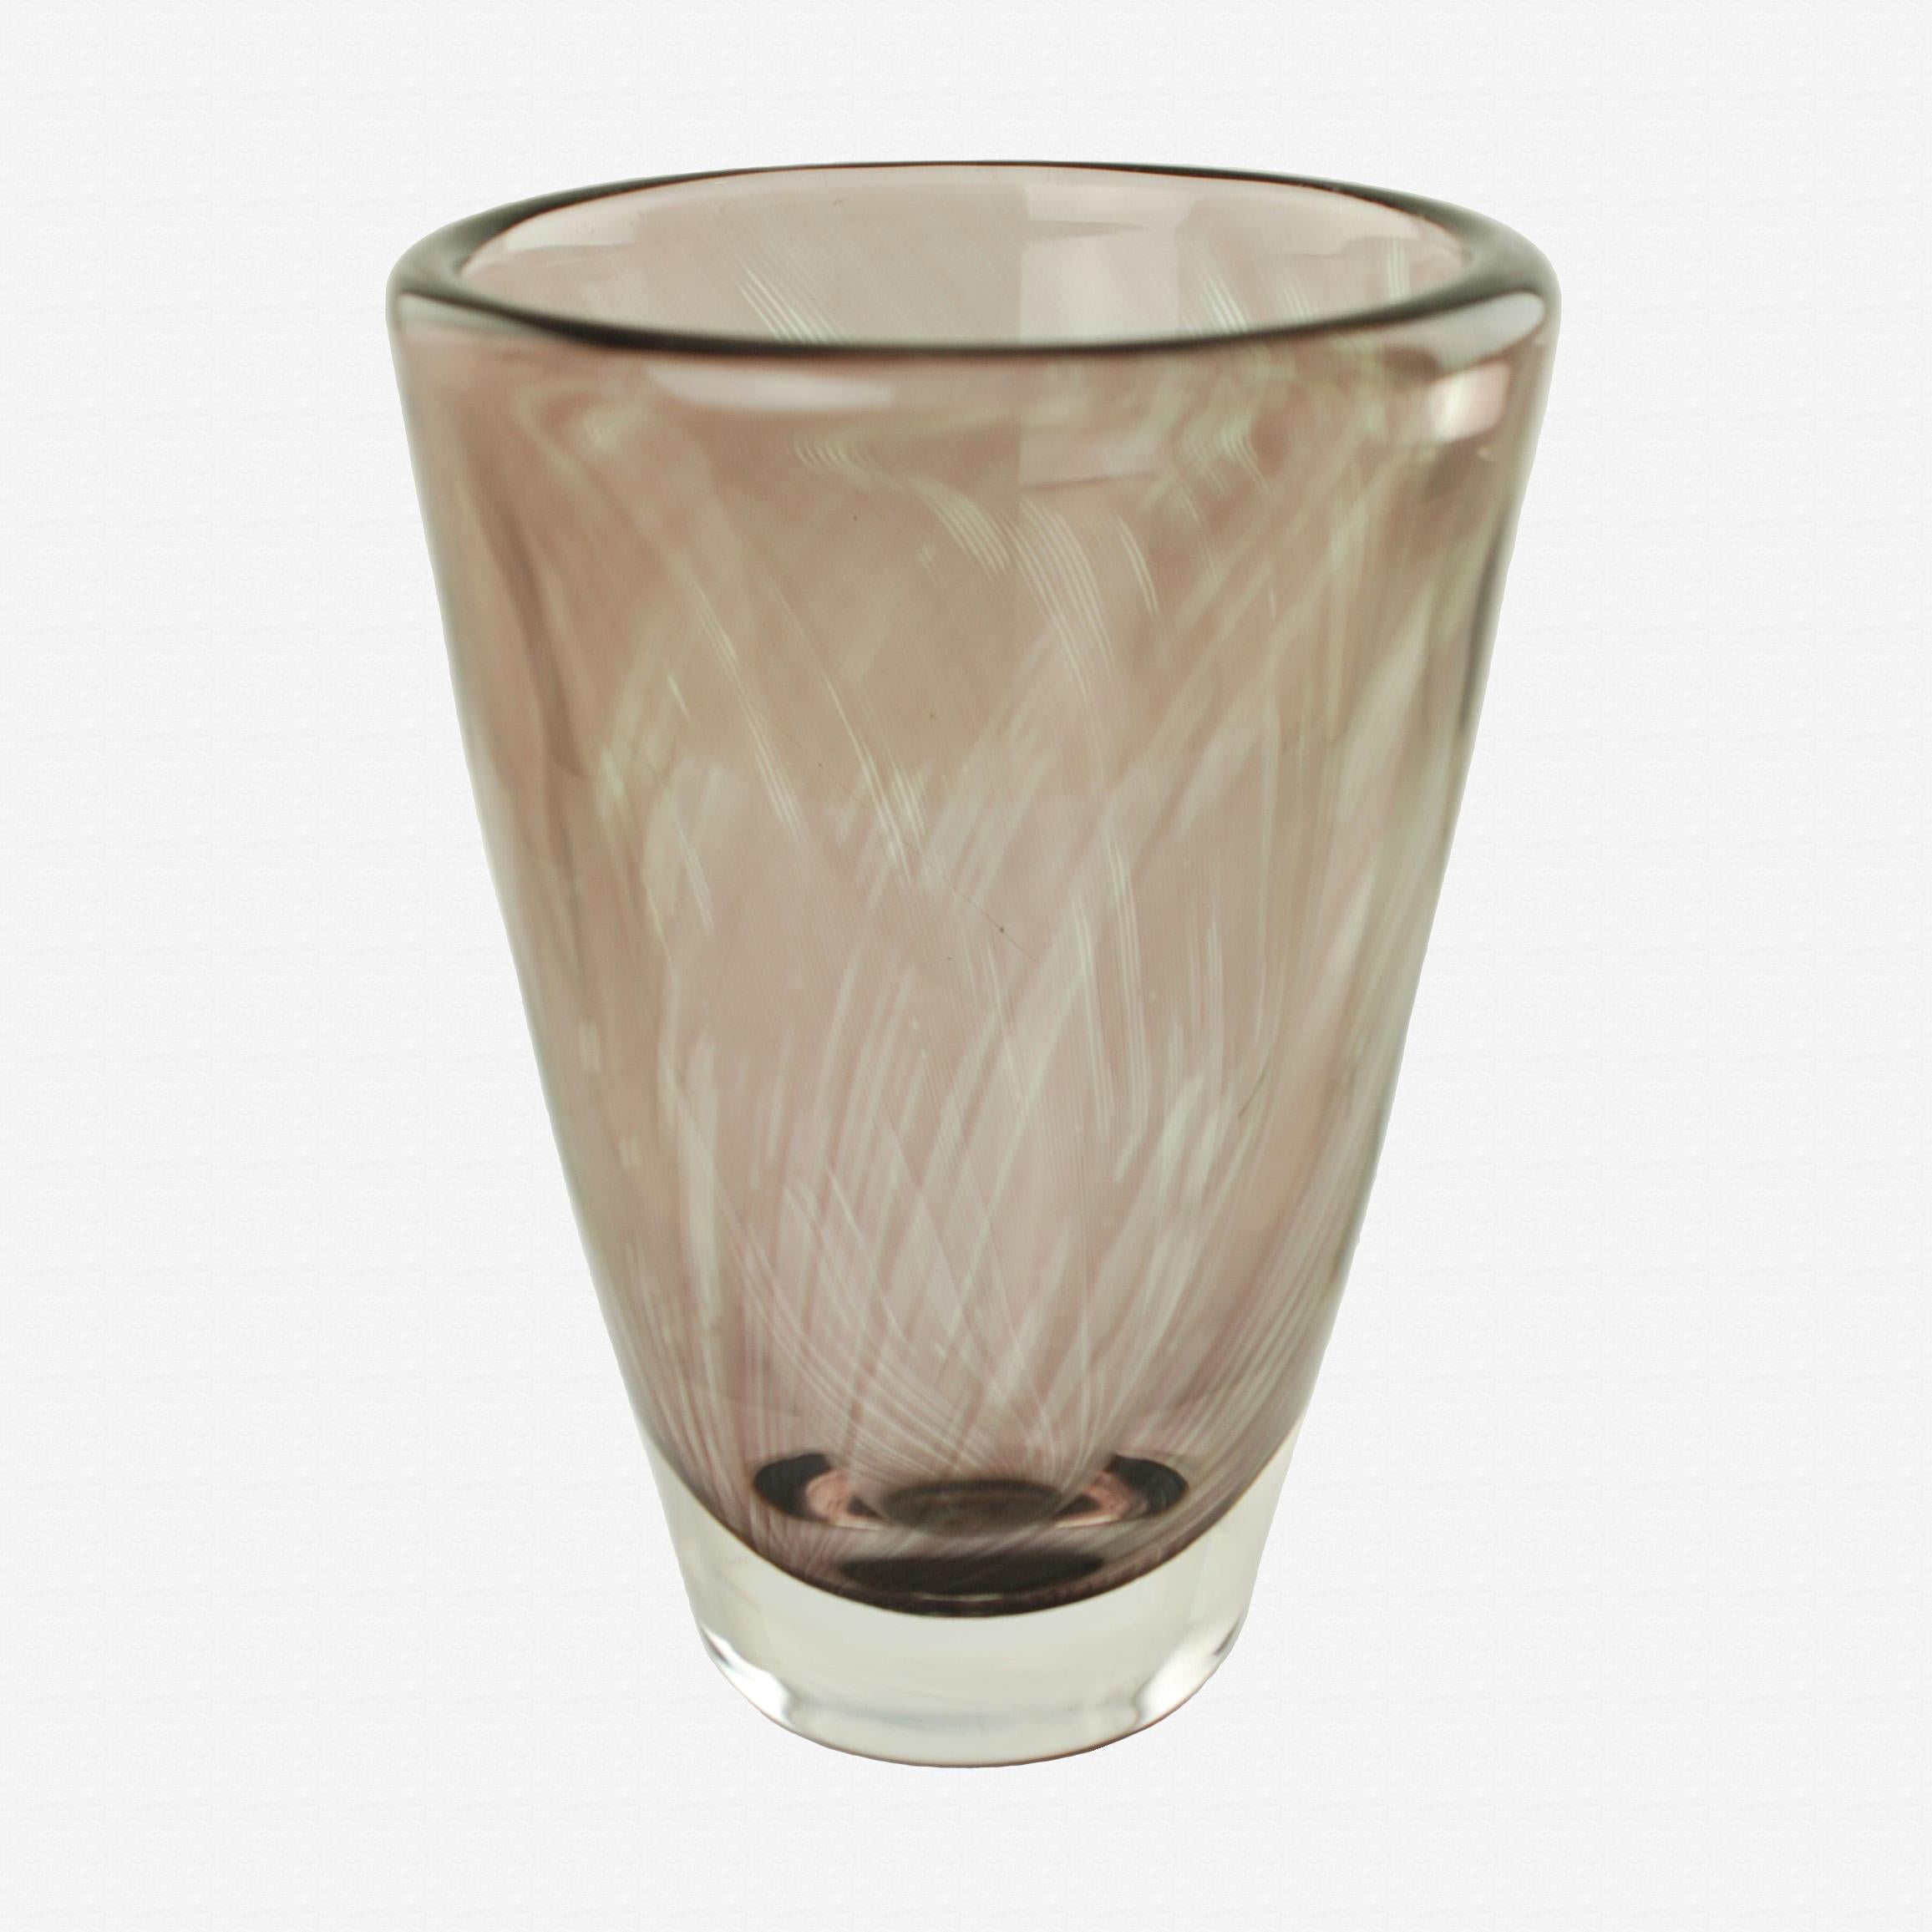 Diese schwere Orrefors Graal Glasvase wurde von dem angesehenen schwedischen Designer Edvin Öhrström (1906-1994) entworfen. Das Stück hat eine klassische, ausgestellte zylindrische Form und weist eine dicke Schicht aus klarem Glas über einer